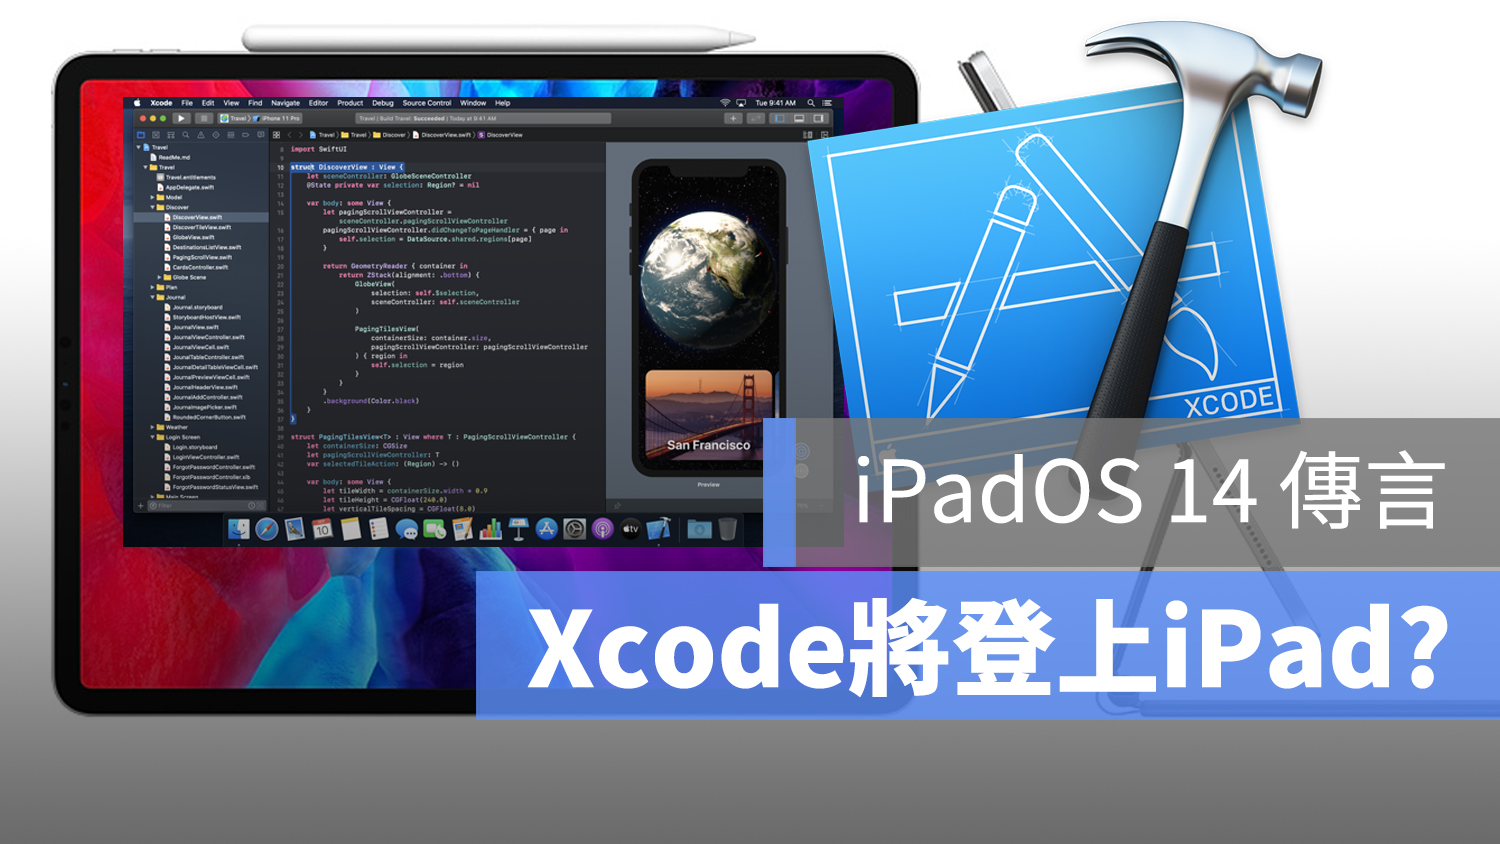 Xcode iPad